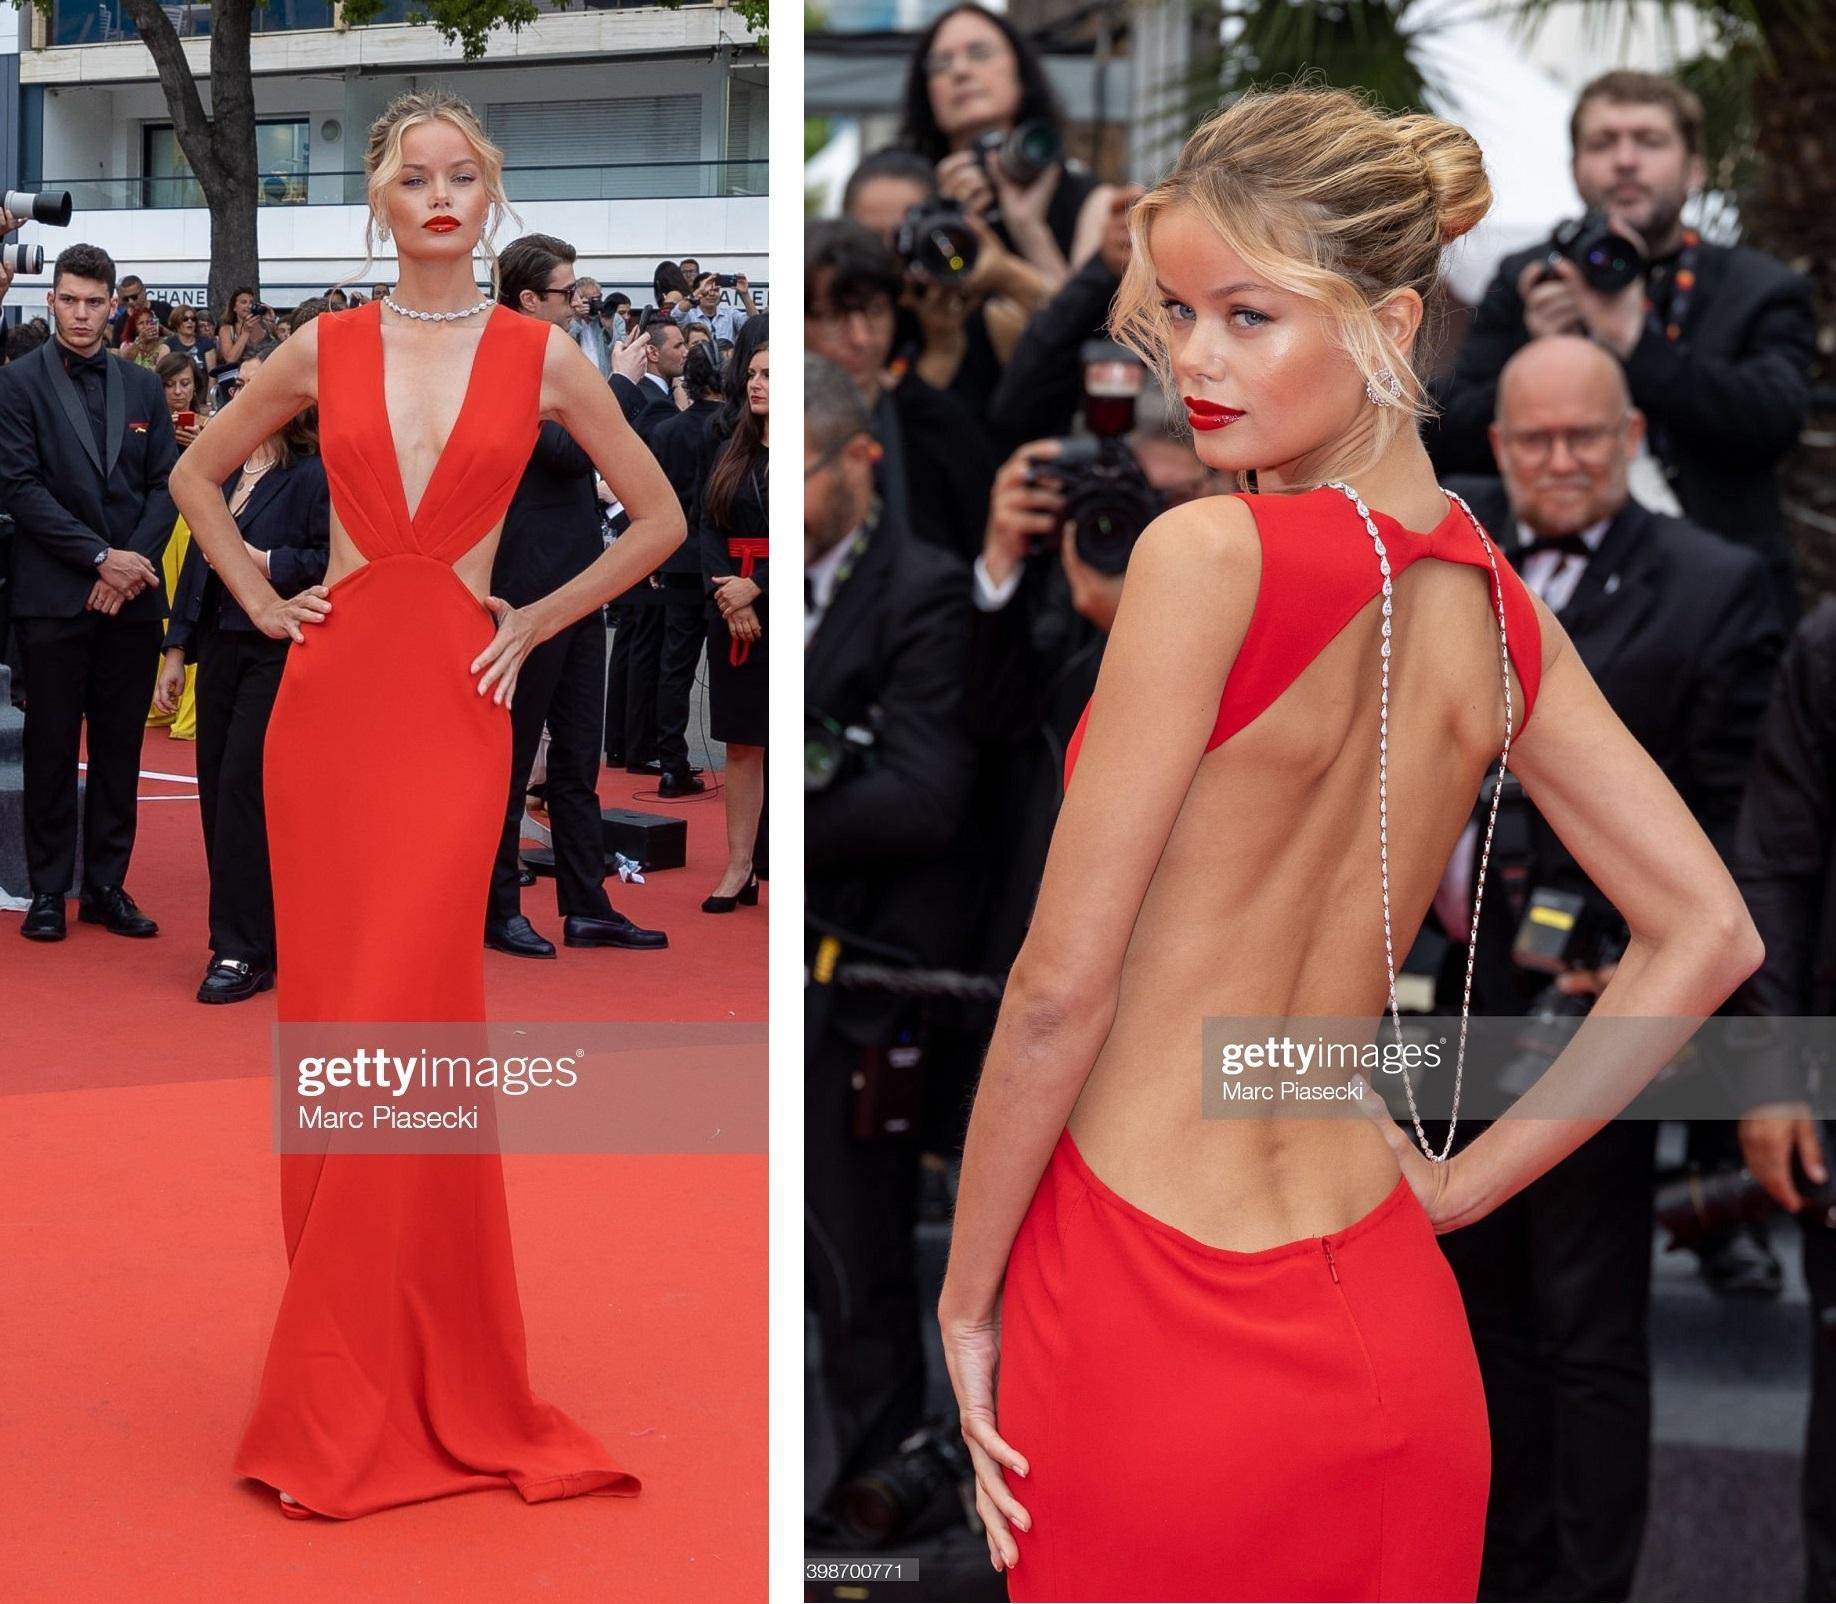 Cannes ngày 6: Sharon Stone cởi váy trên thảm đỏ, hai người đẹp gặp sự cố 'lộ hàng' kém duyên - Ảnh 17.